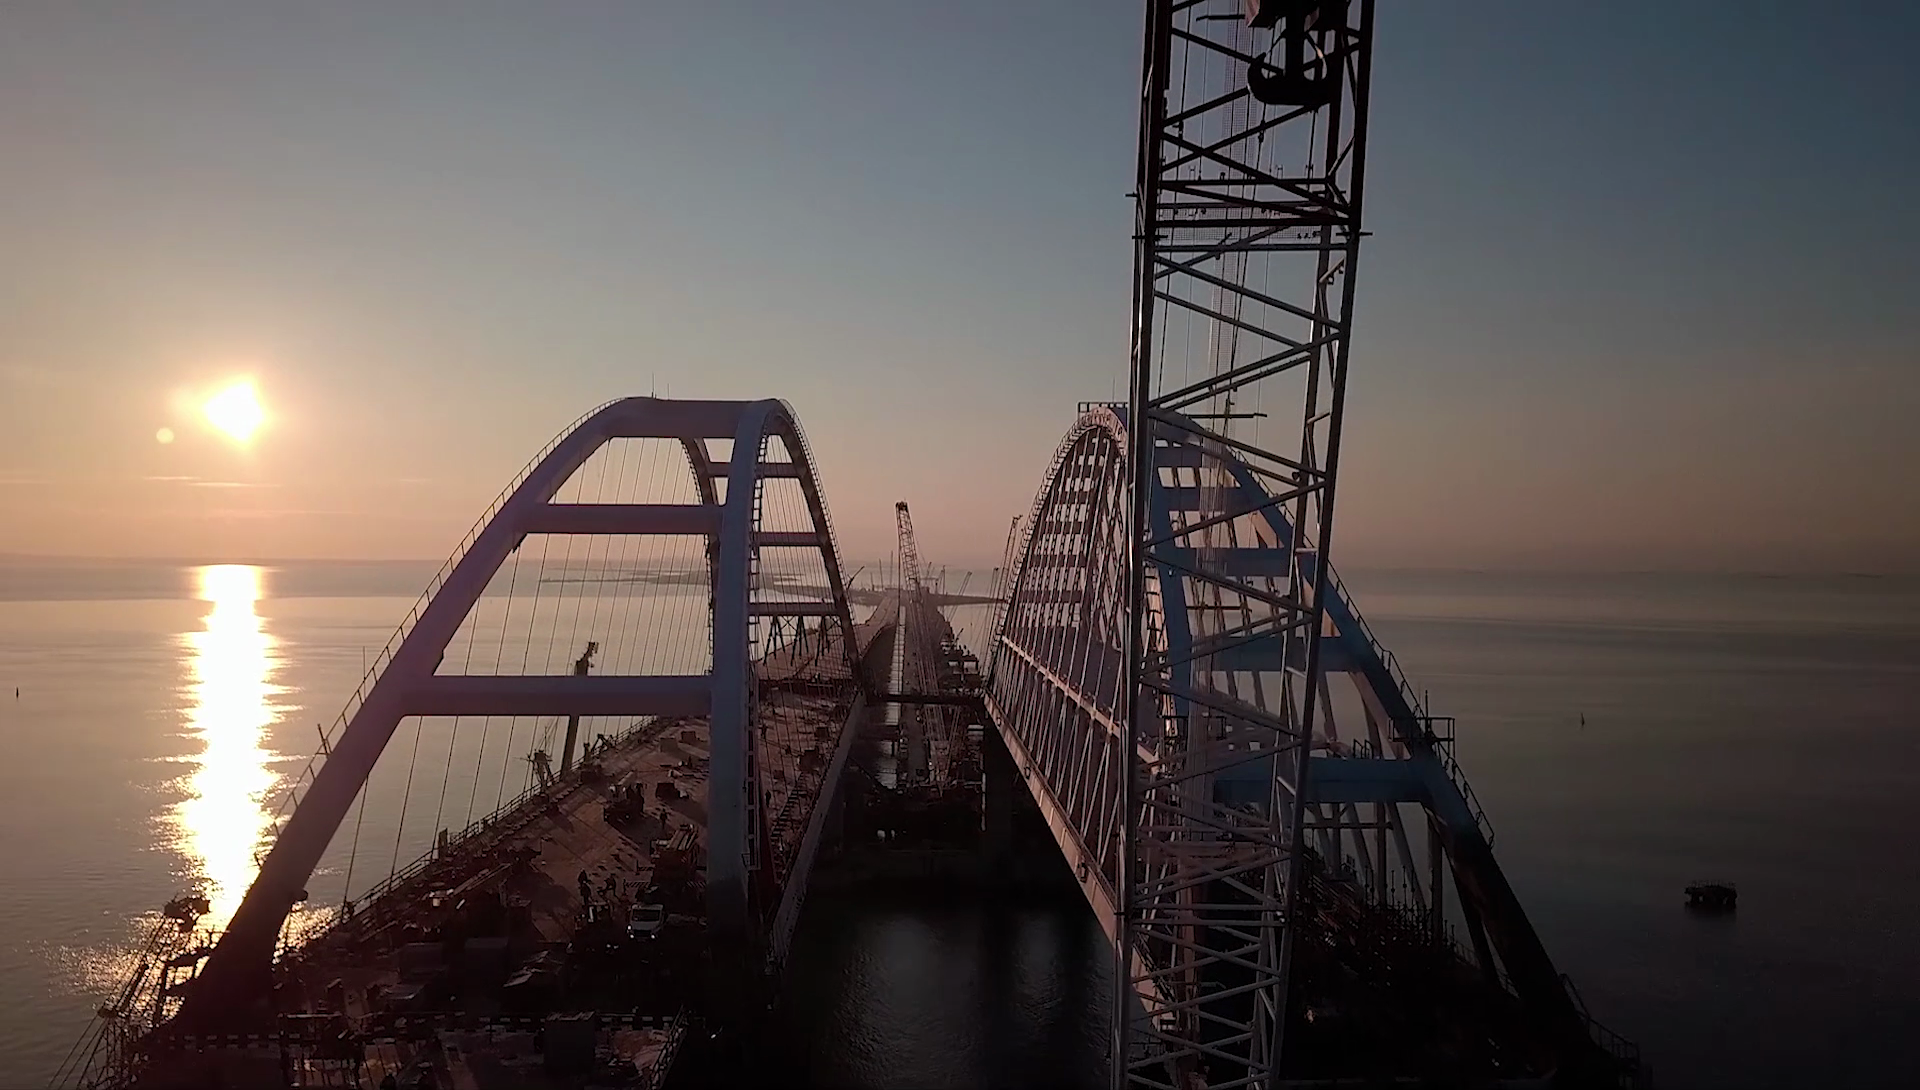 Фото: Инфоцентр «Крымский мост»